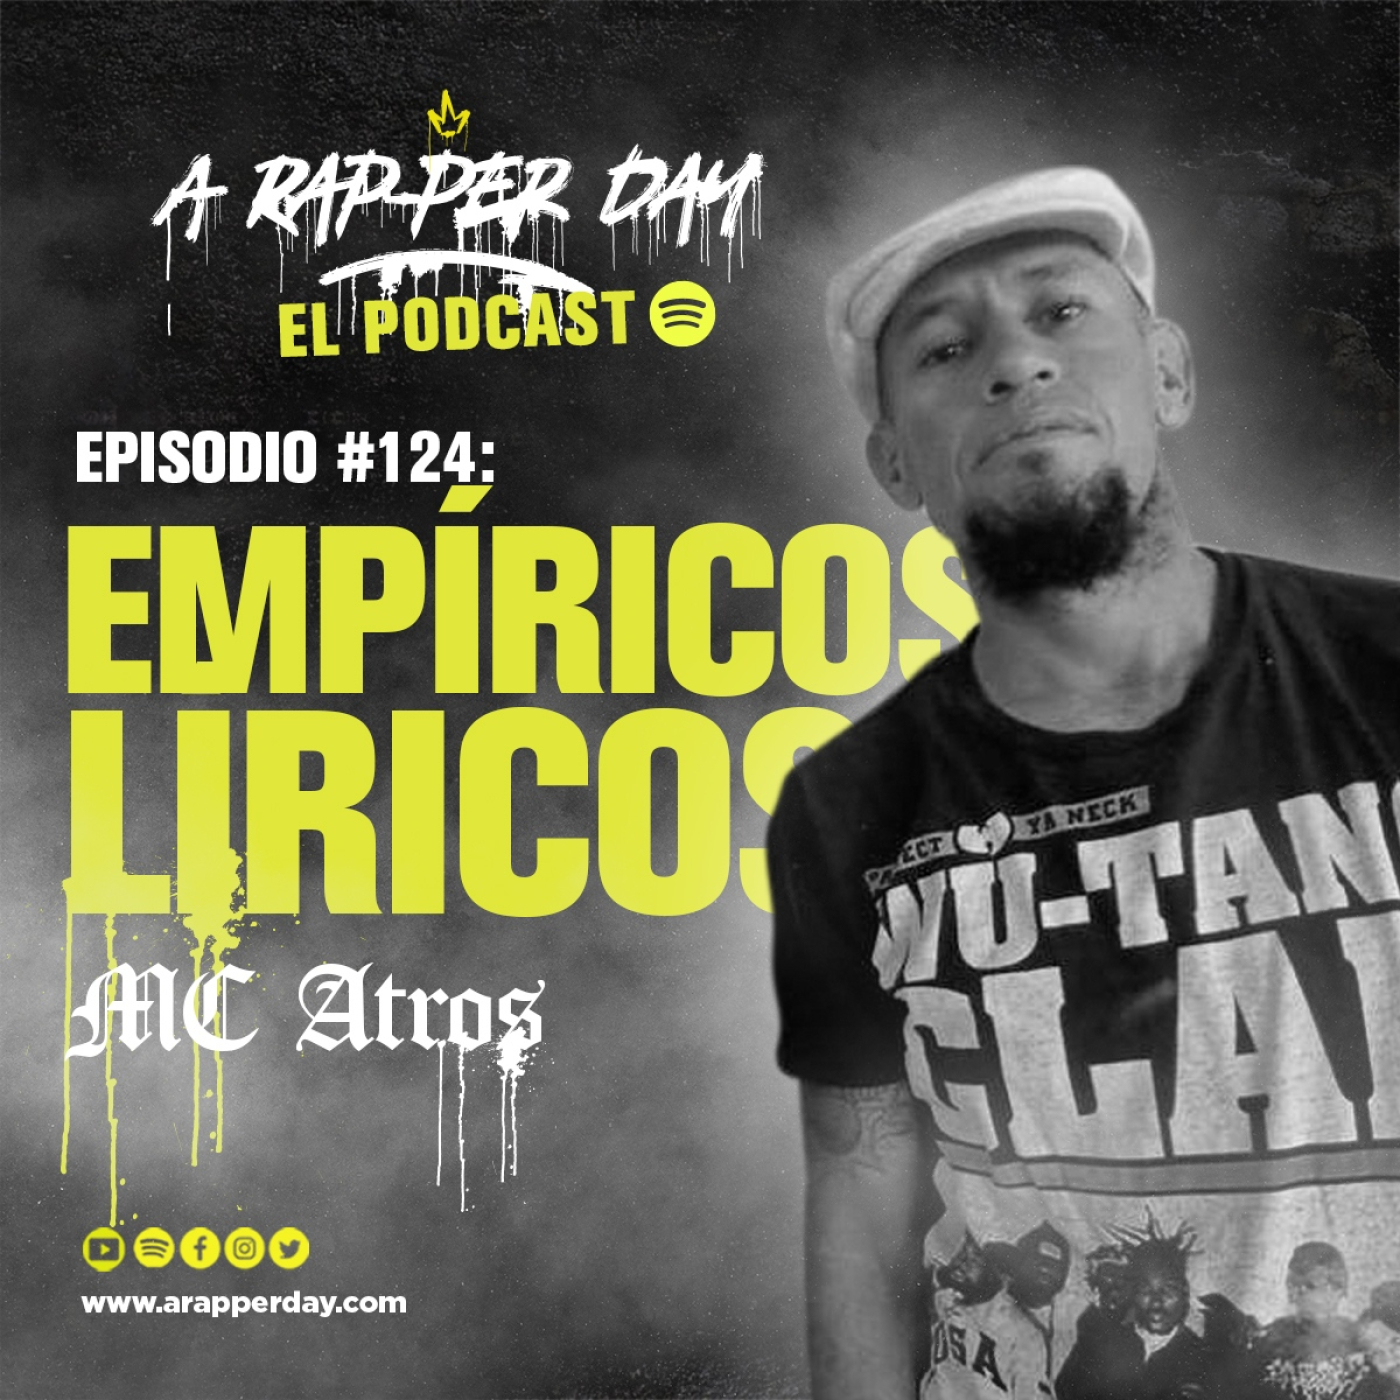 Episodio #124 Entrevista MC ATROS / EMPÍRICOS LÍRICOS